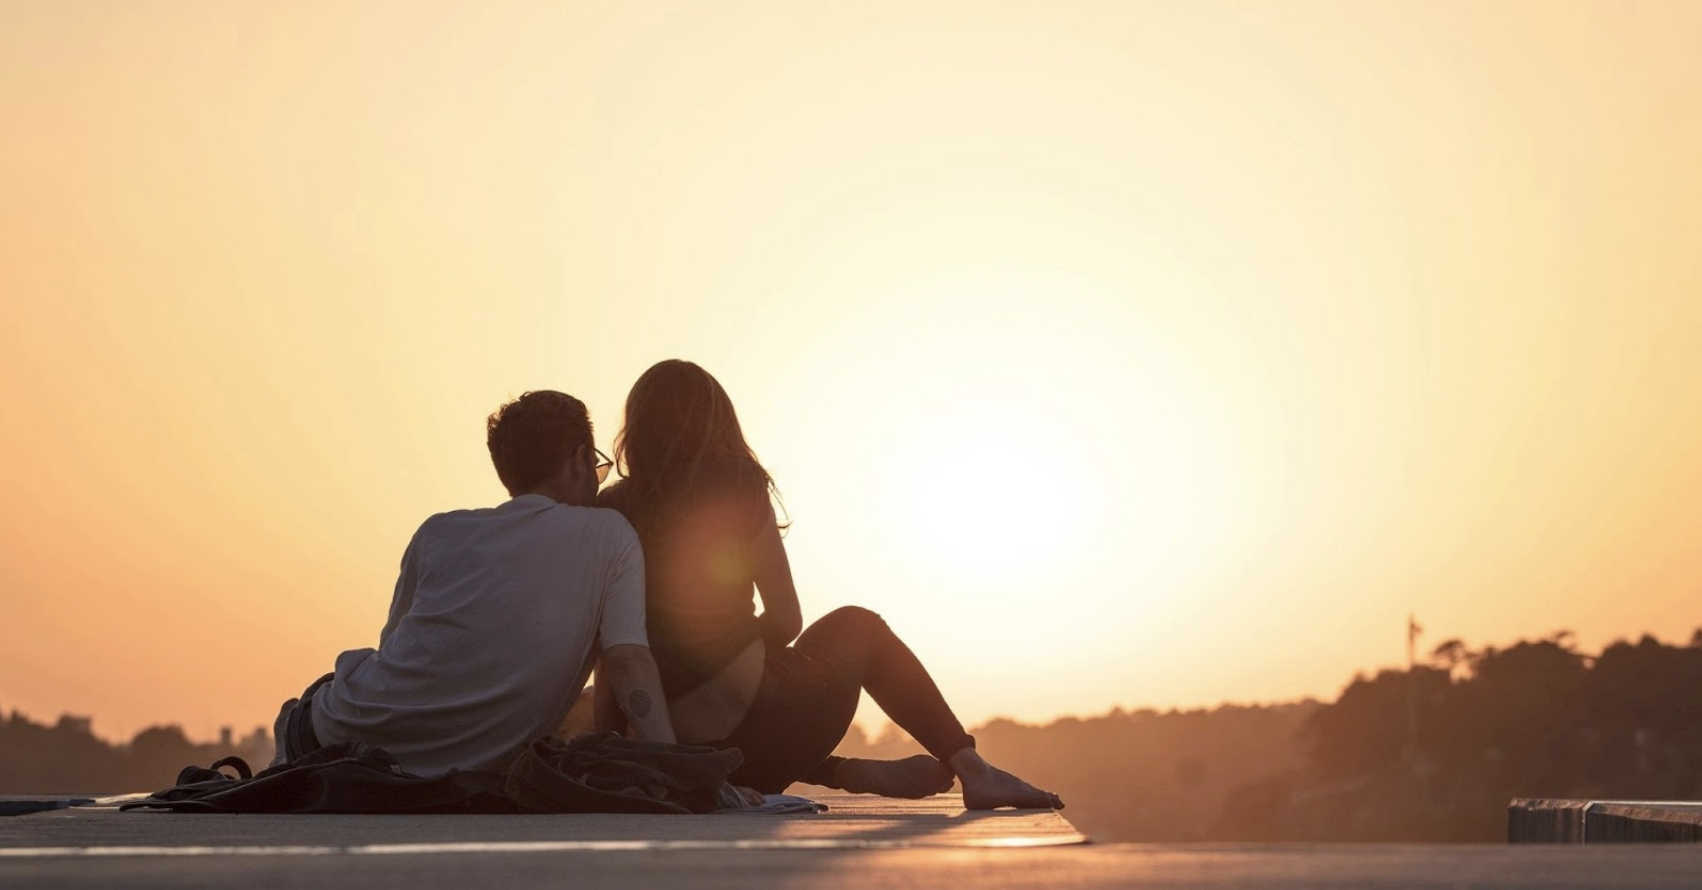 äktenskap efter ett år av dating är Tinder den bästa hookup app